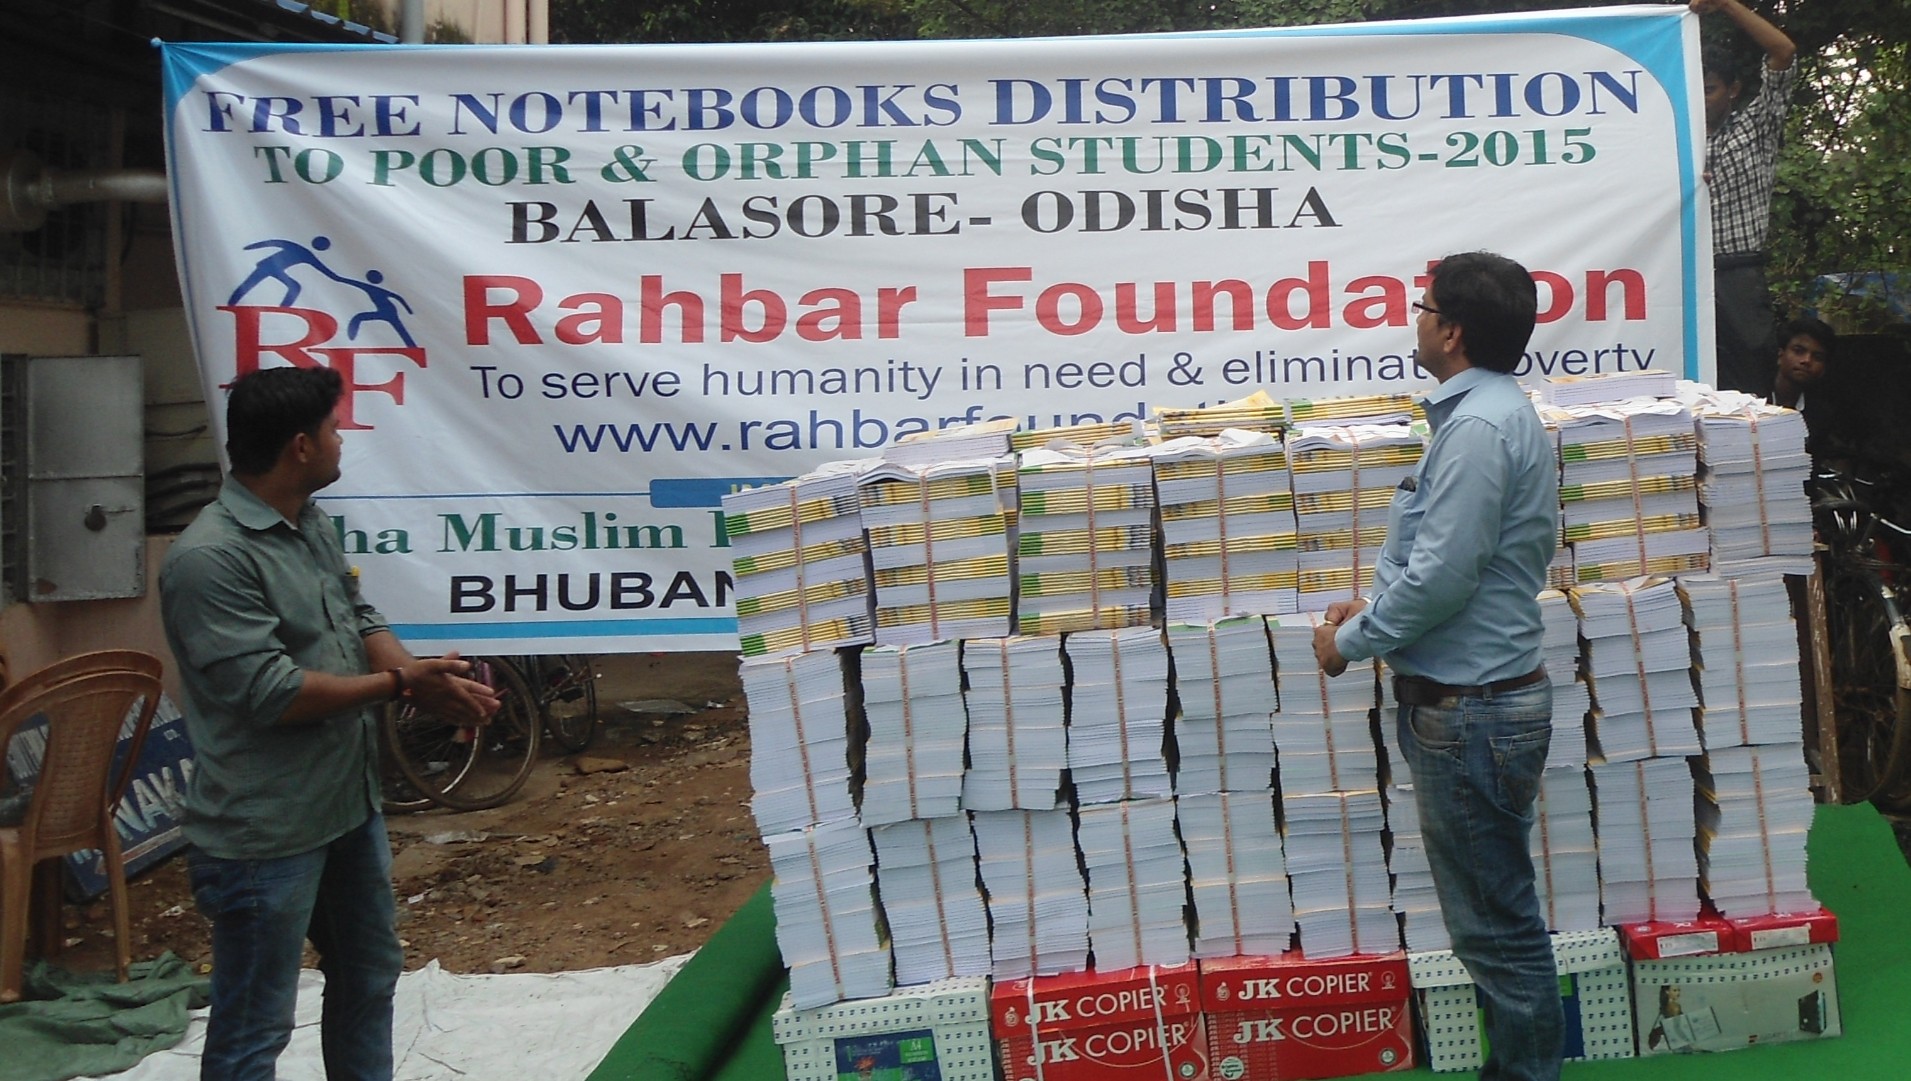 Free Notebooks distribution at Balasore, Odisha